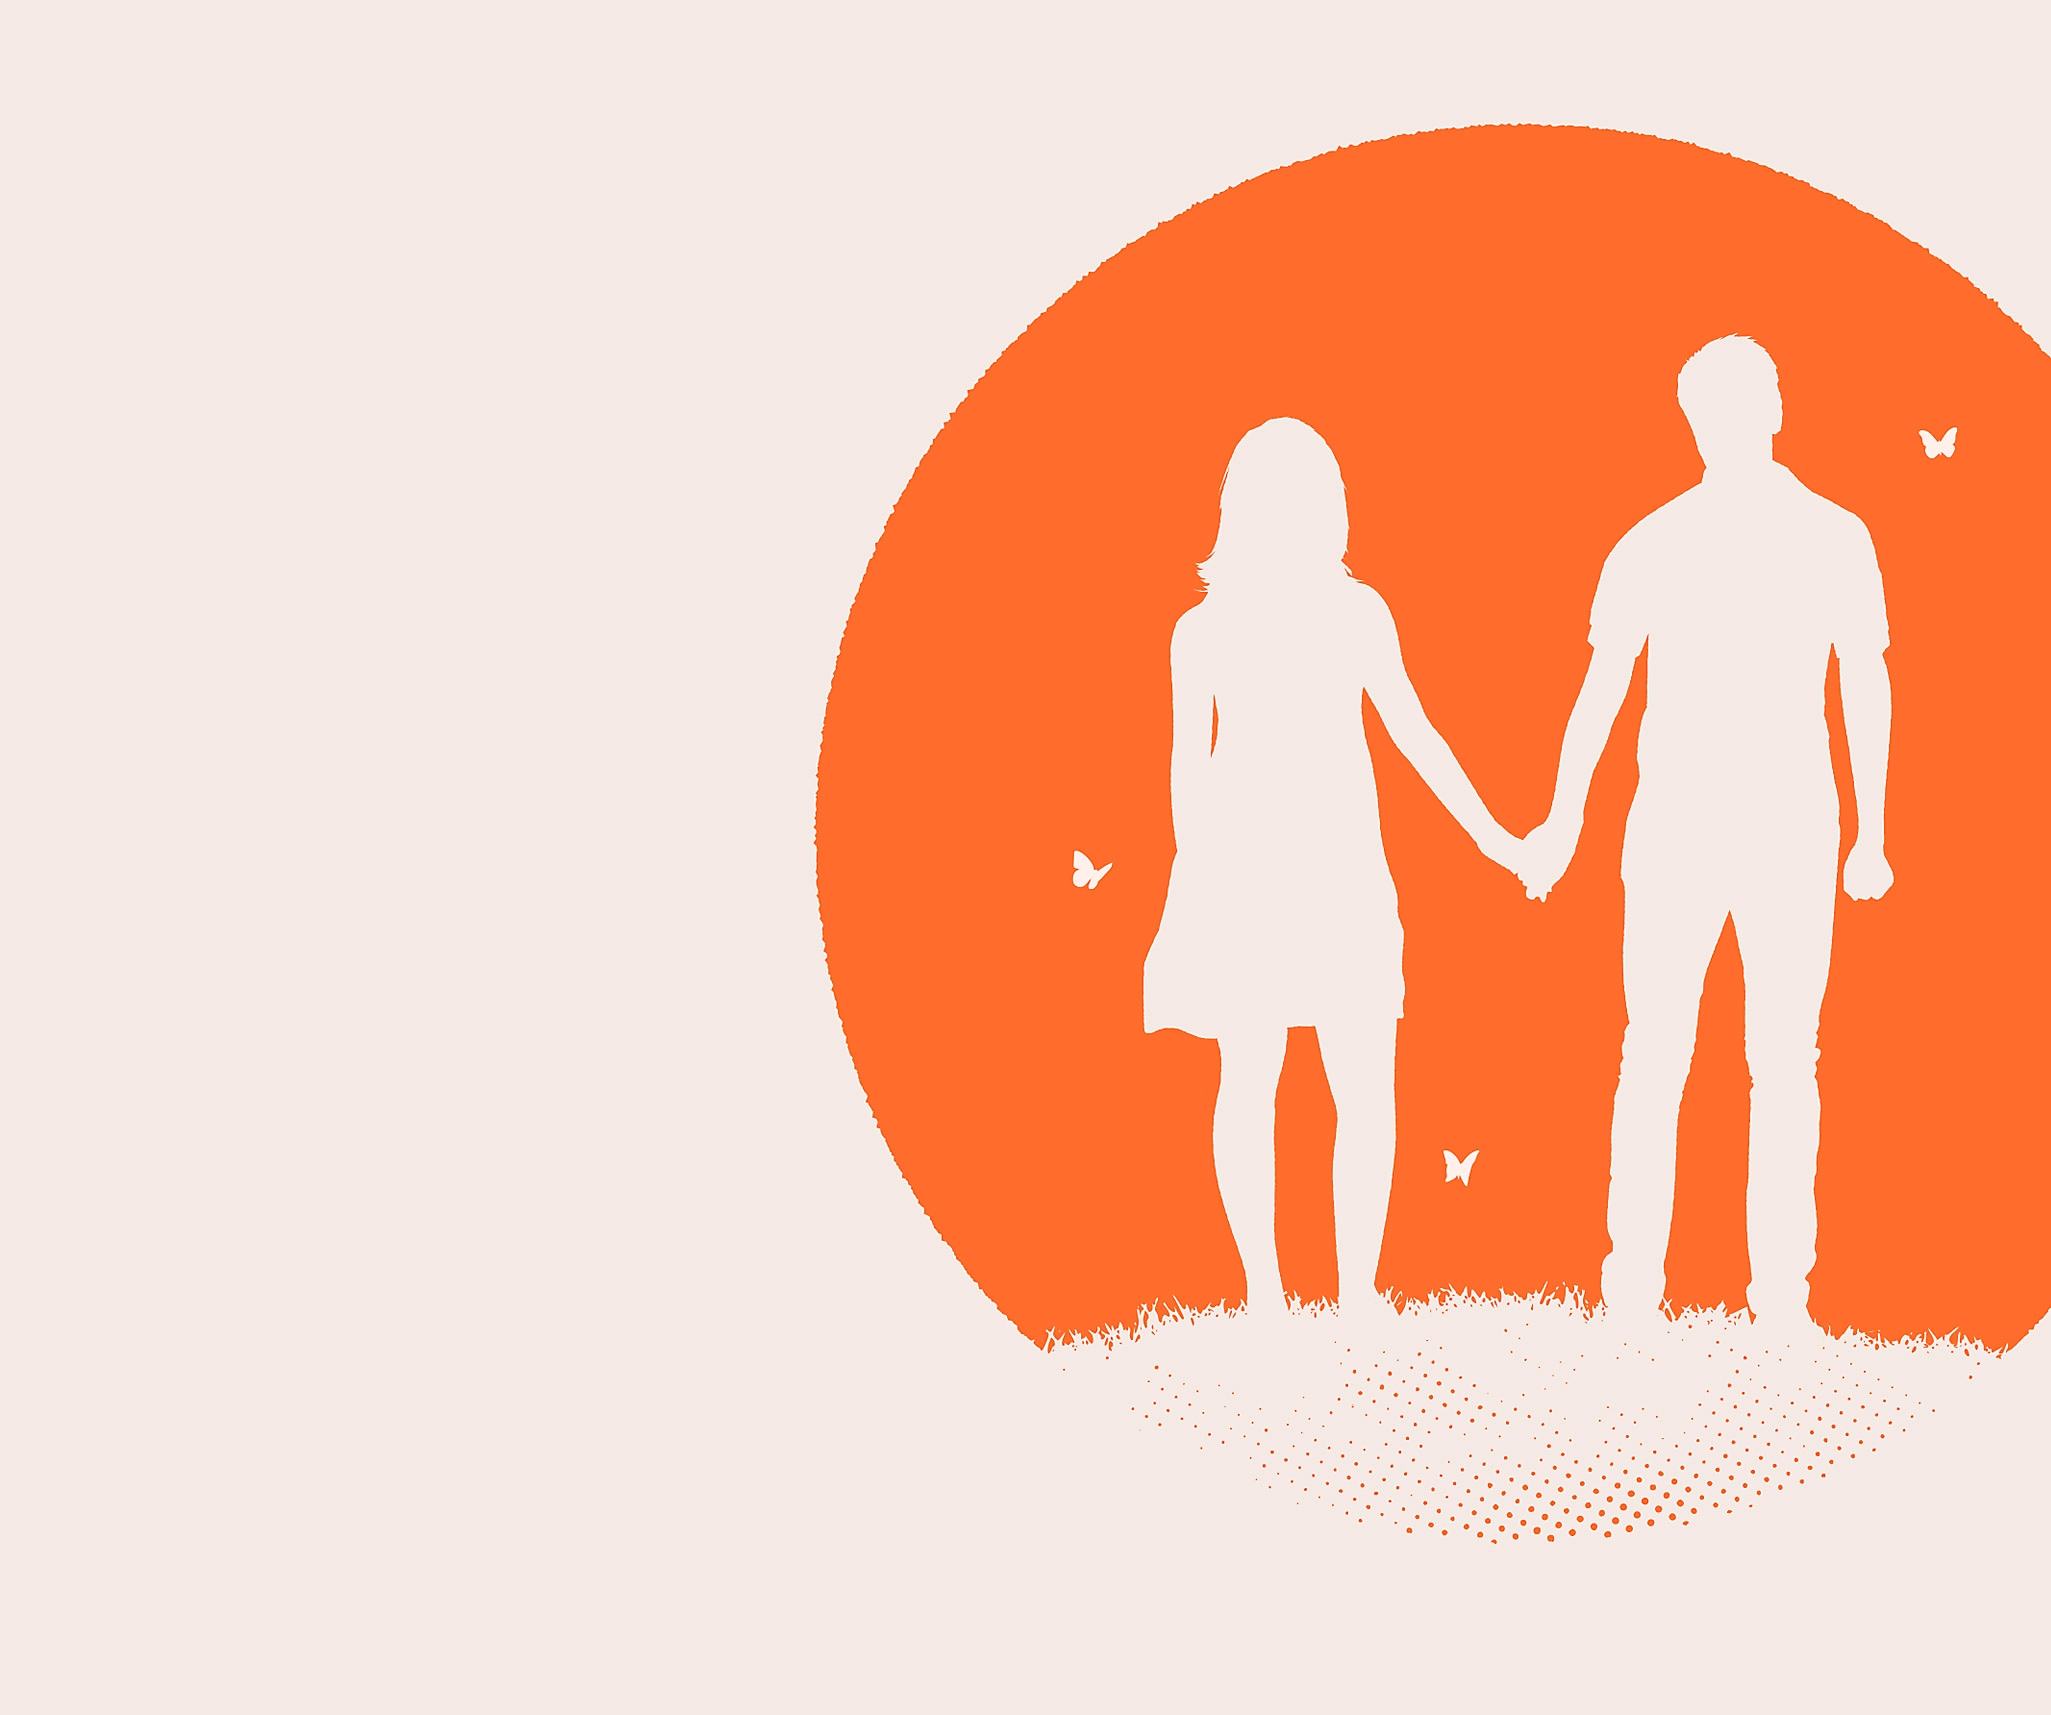 صورة فنية أساسية من Everybody's Gone to the Rapture يظهر فيها رجل وامرأة في صورة ظليه باللون الأبيض مقابل دائرة برتقالية.